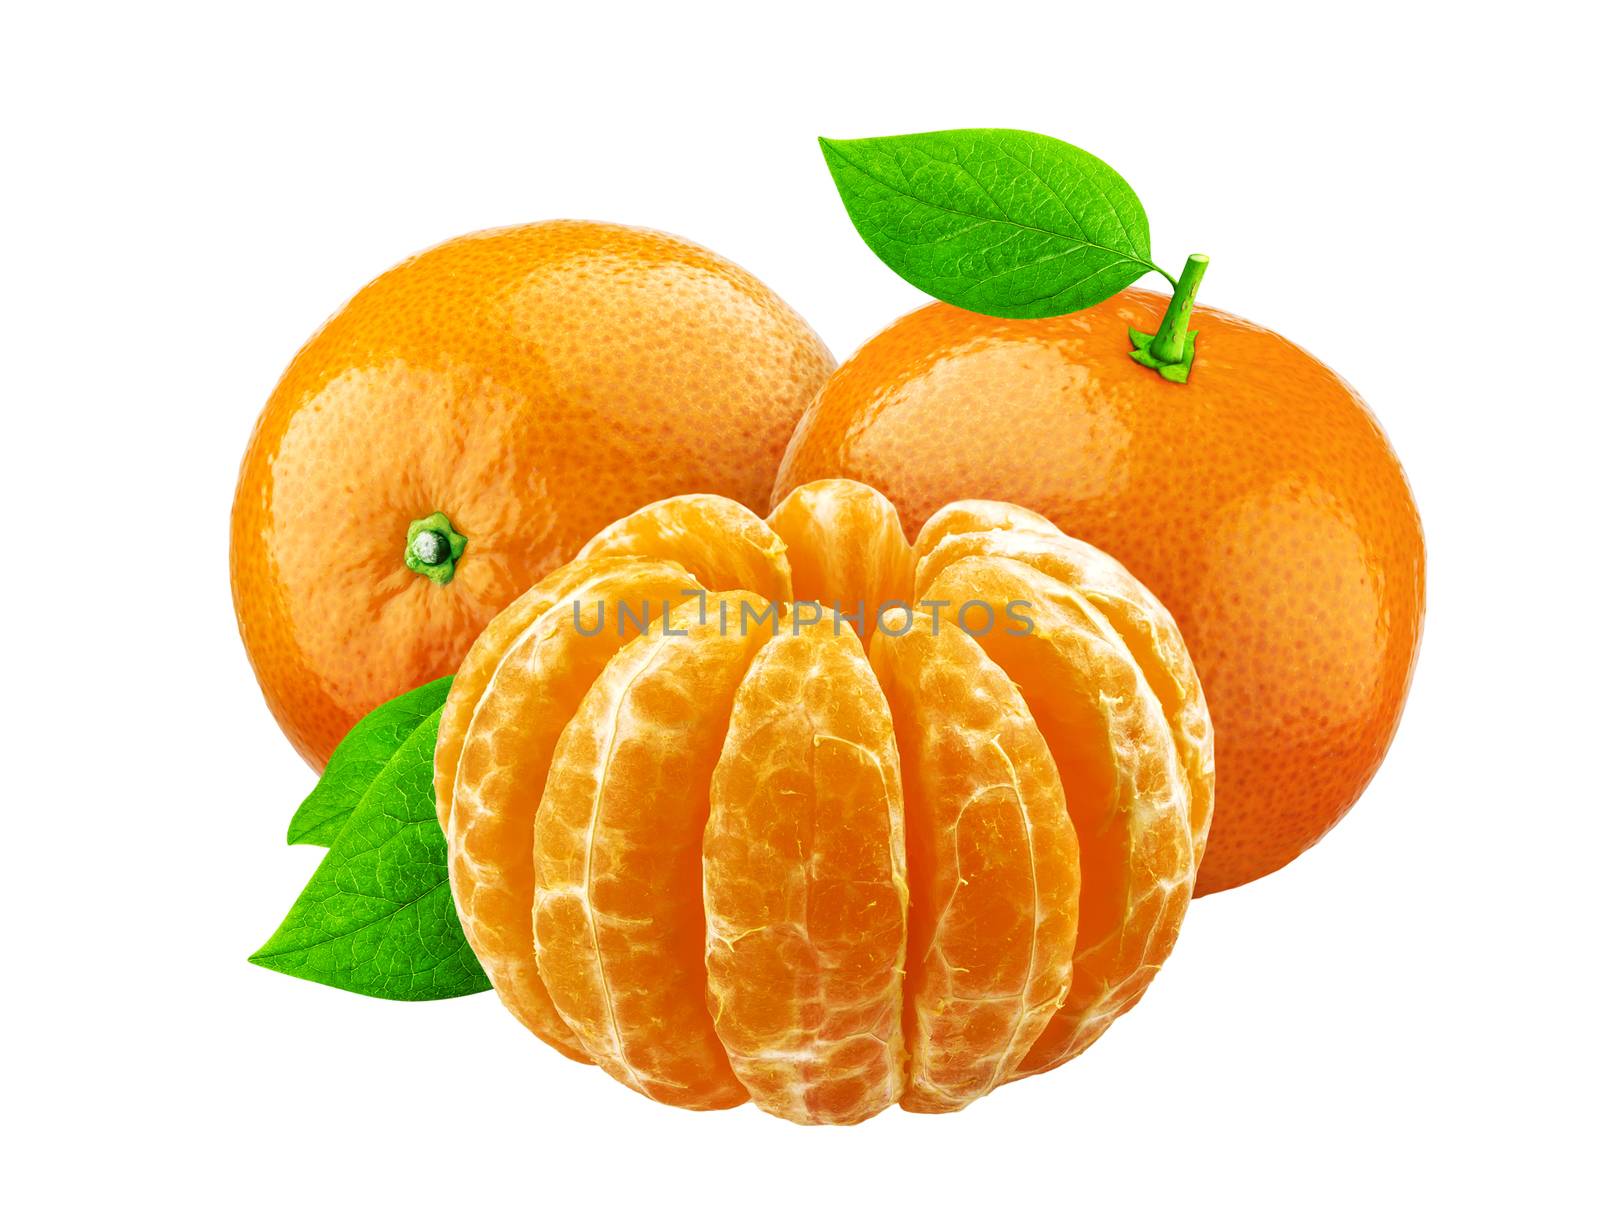 Mandarine isolated on white background by xamtiw